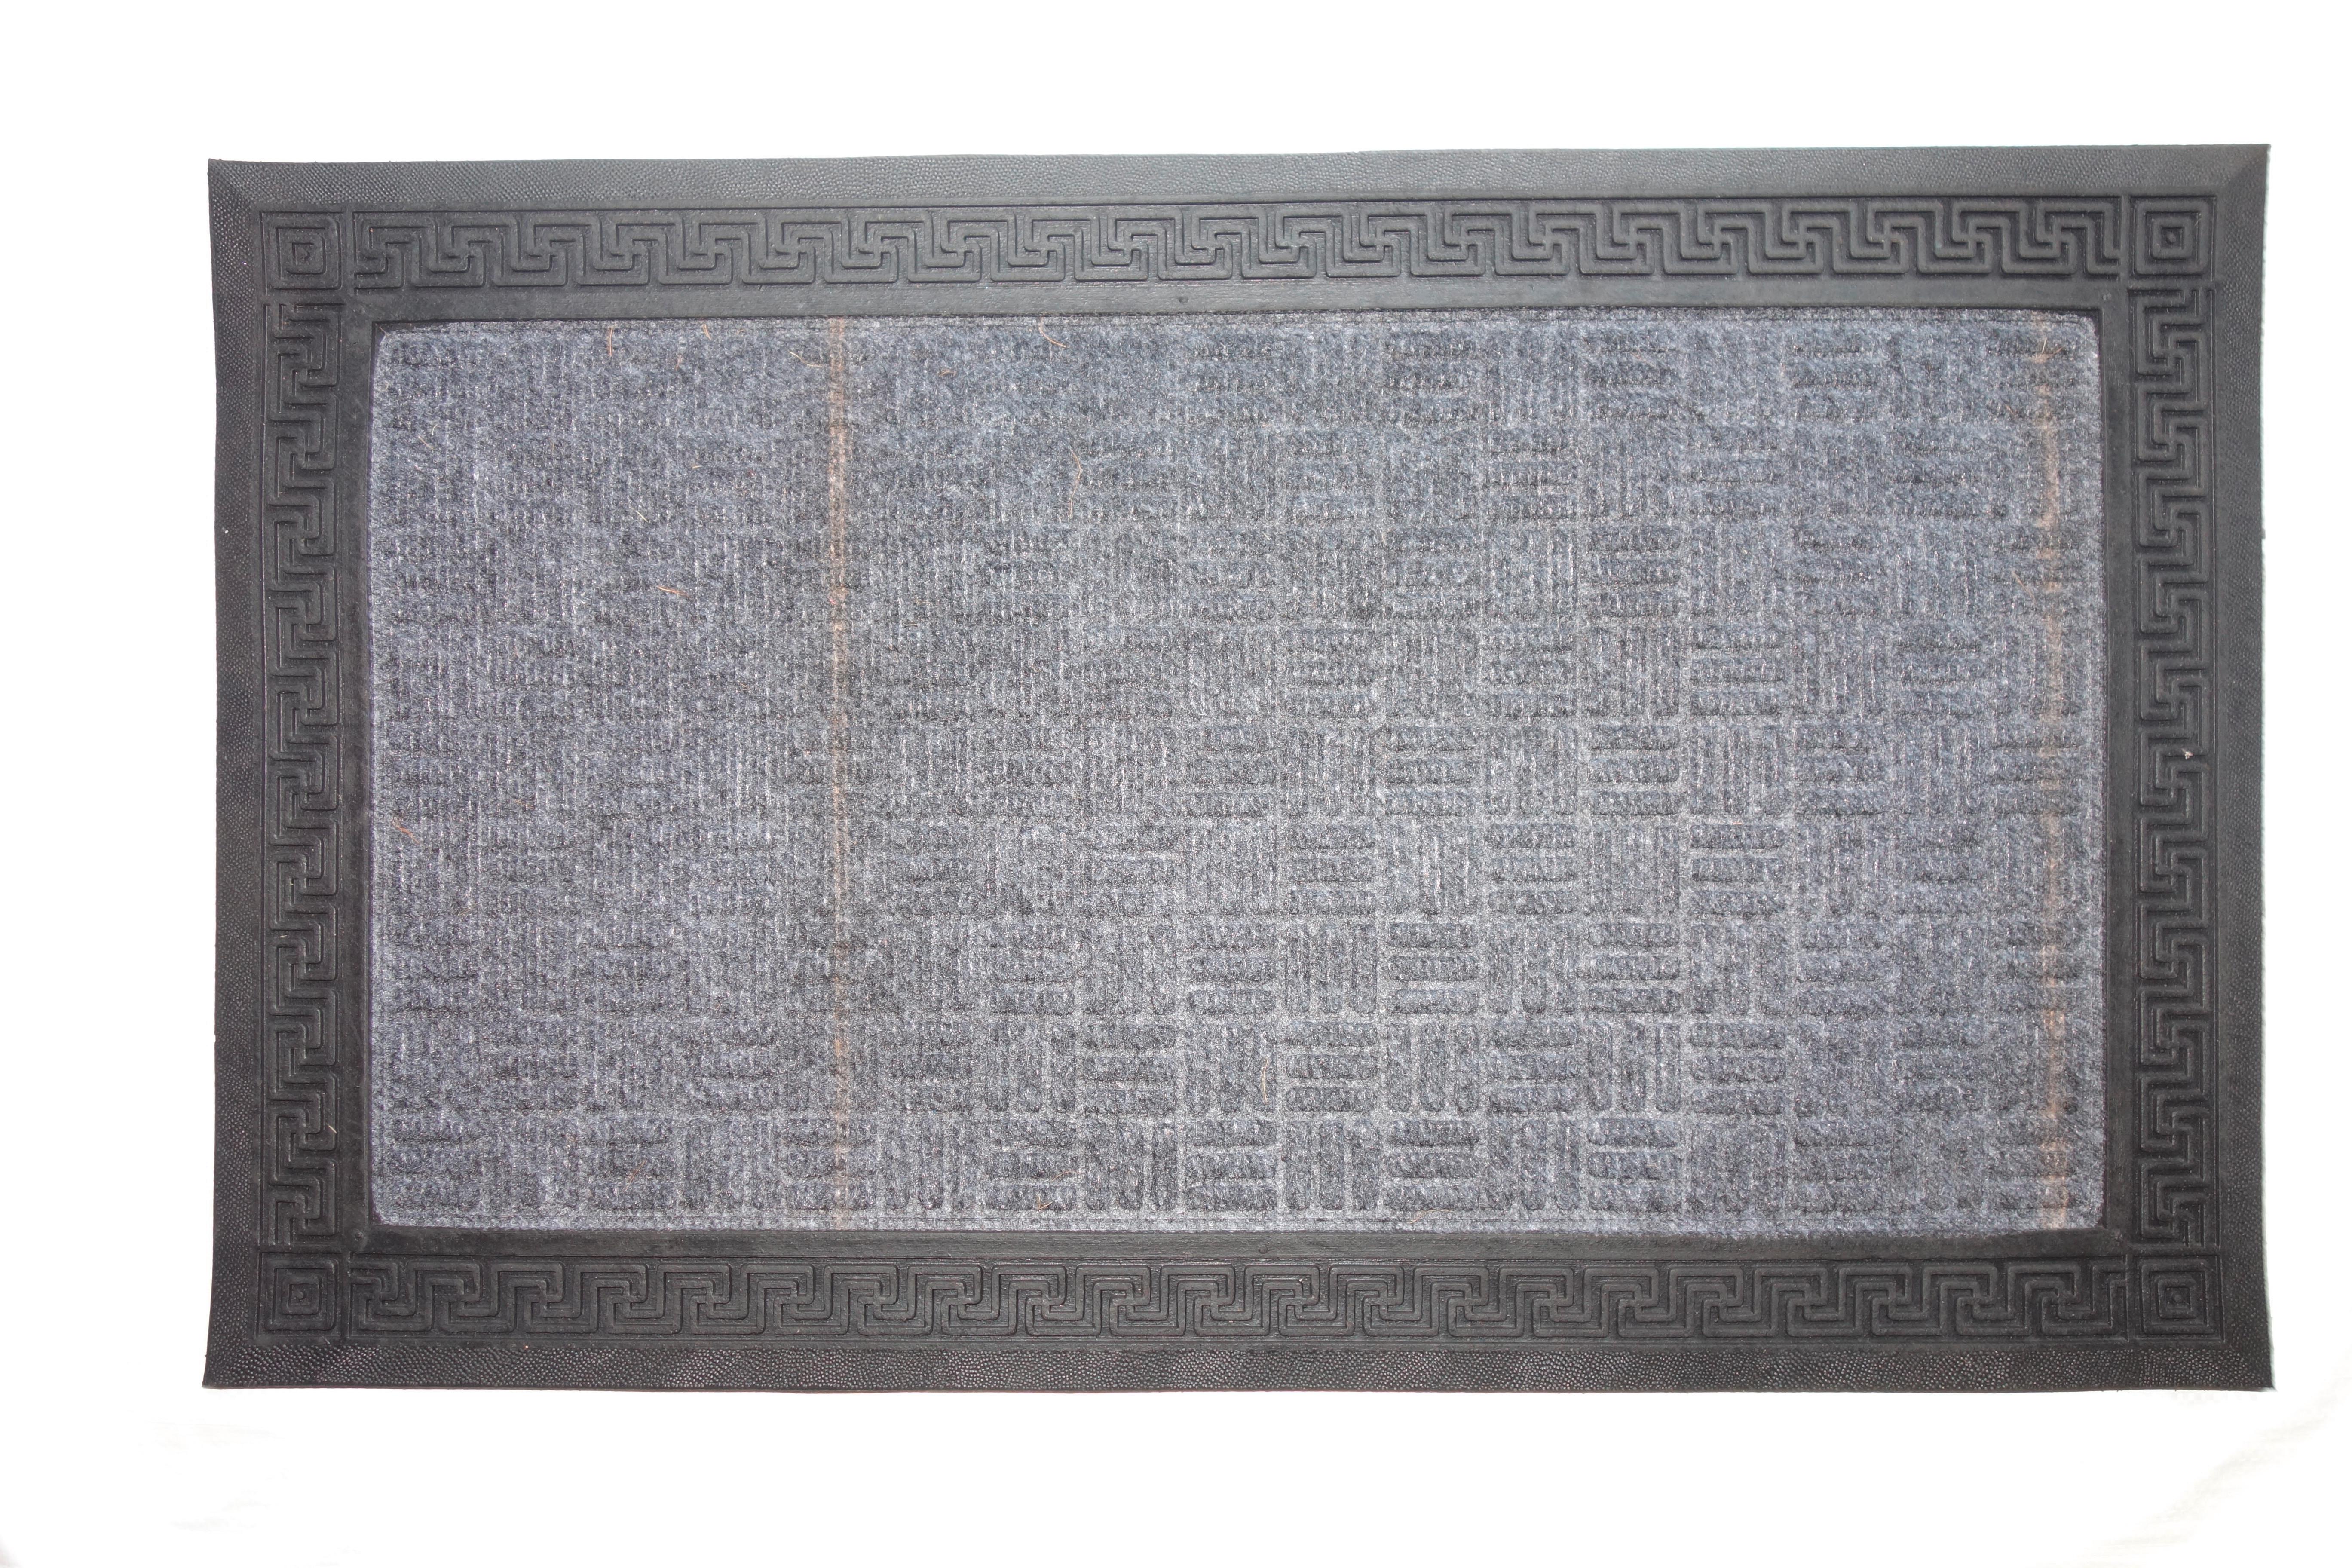 Fußmatte Kourtney 40x60 cm mit Gummi Rutschfest - Dunkelgrau, KONVENTIONELL, Kunststoff (40/60cm) - Homezone